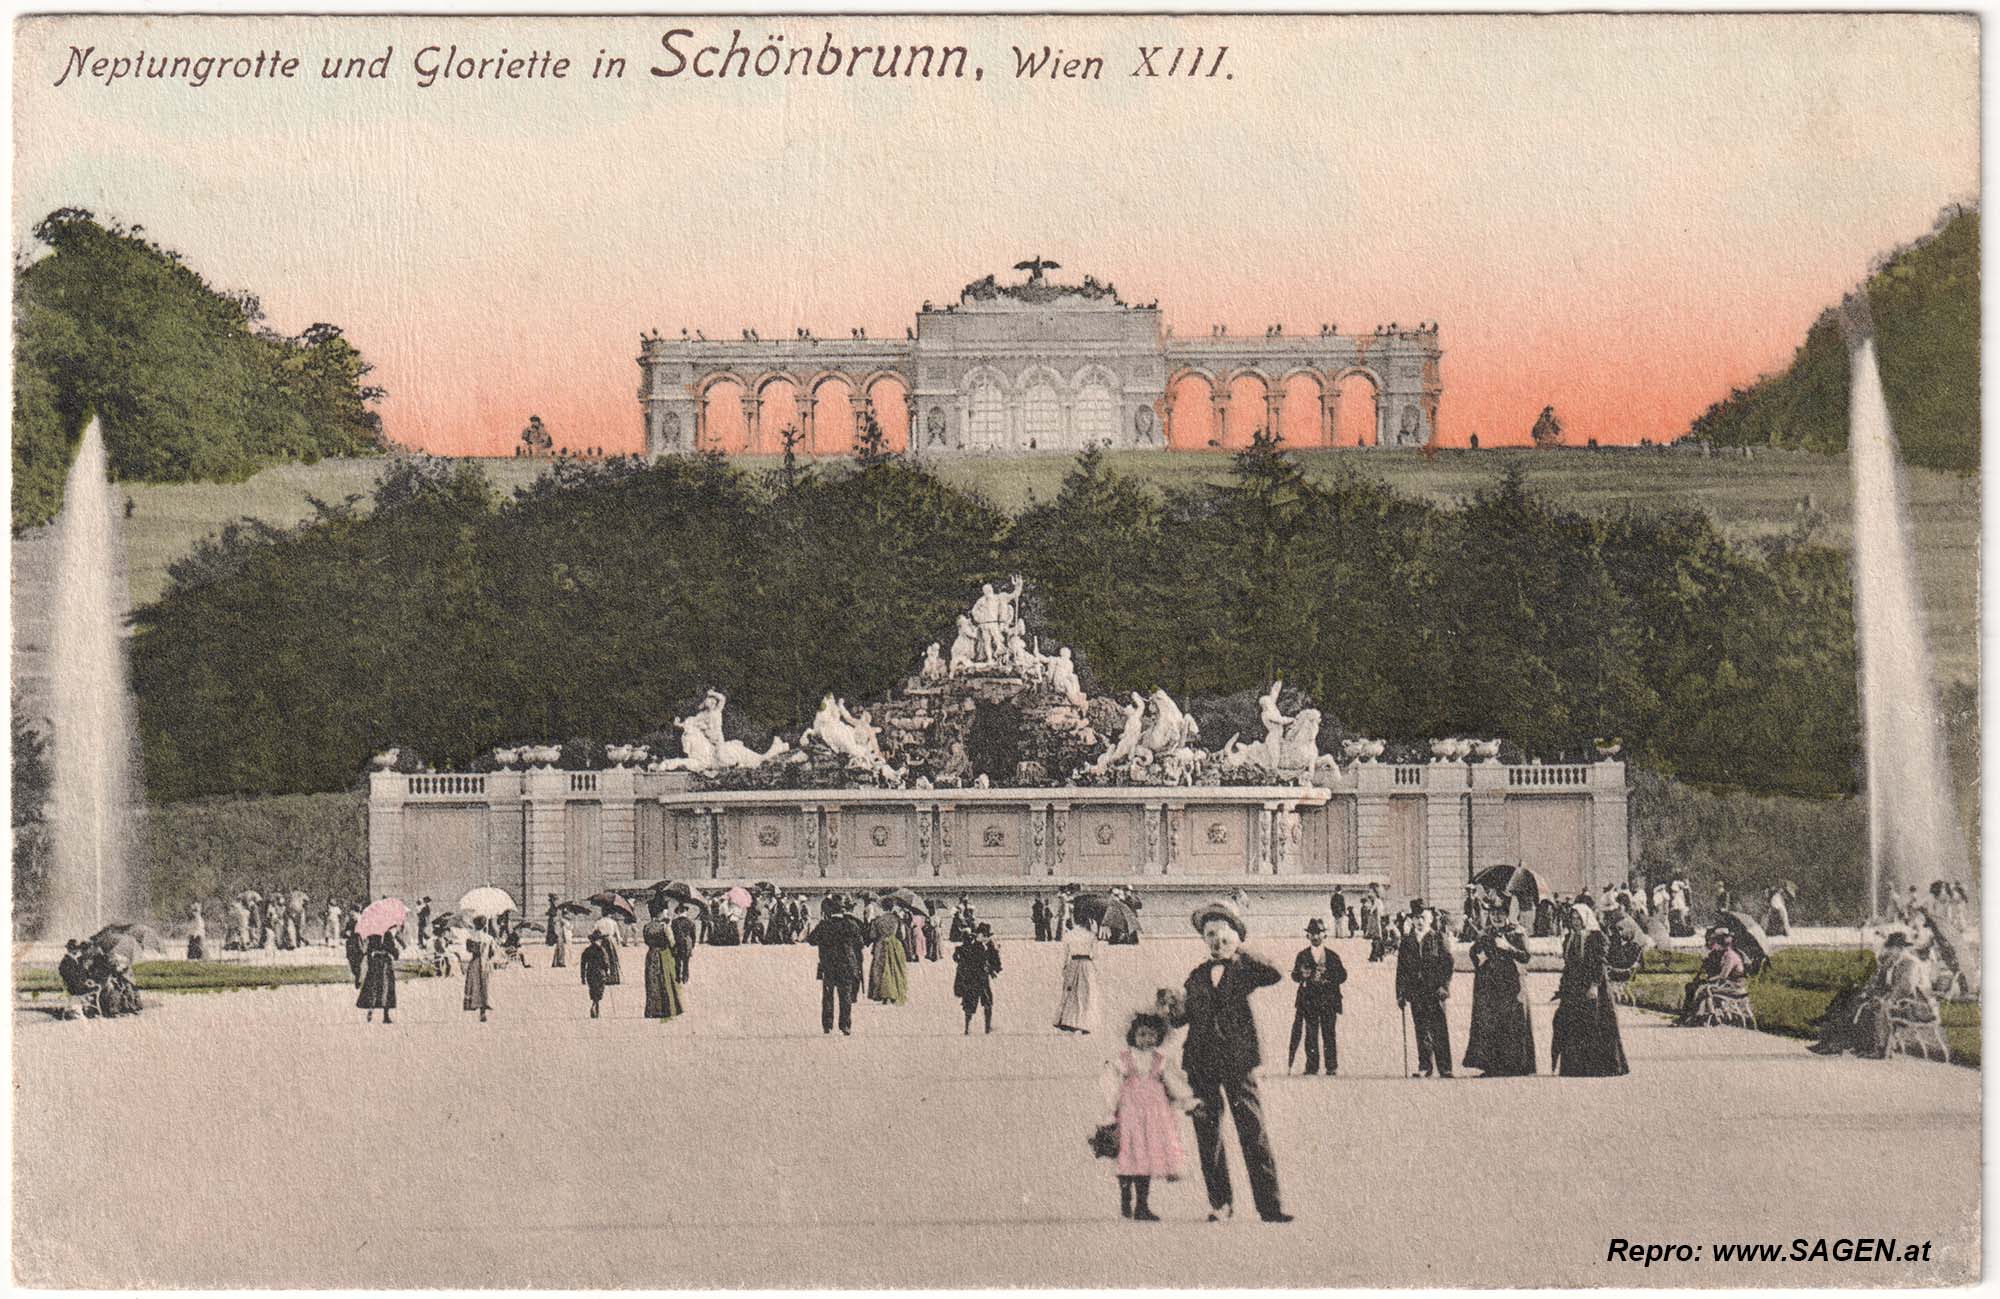 Neptungrotte und Gloriette in Schönbrunn, Wien XIII.